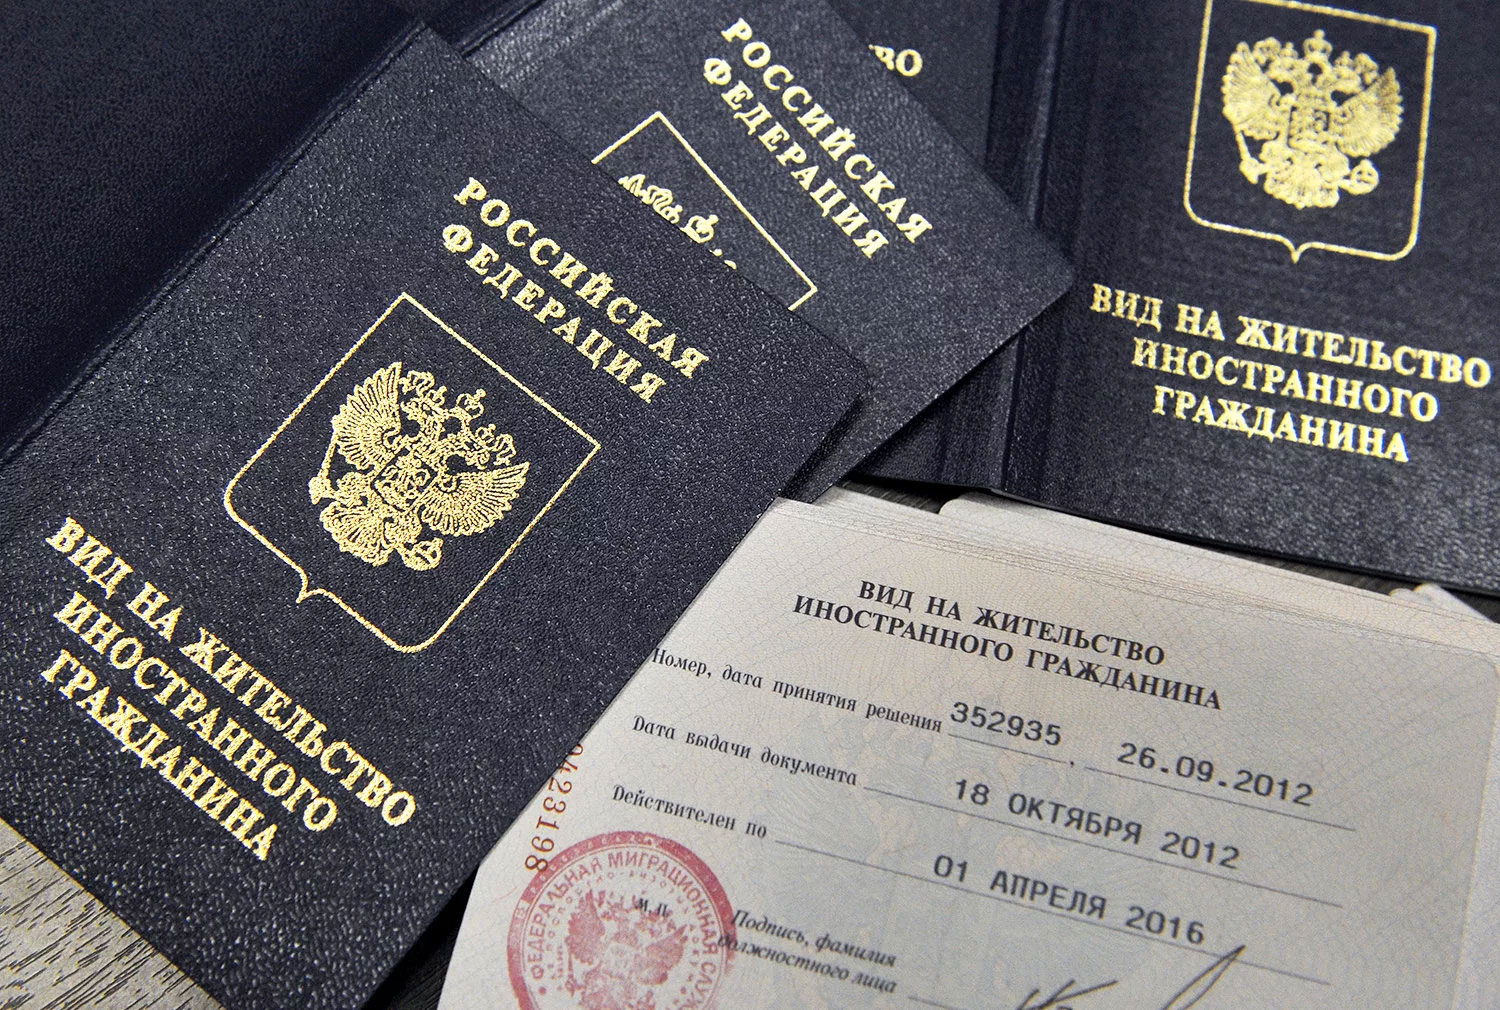 Как получить второй паспорт швеции?